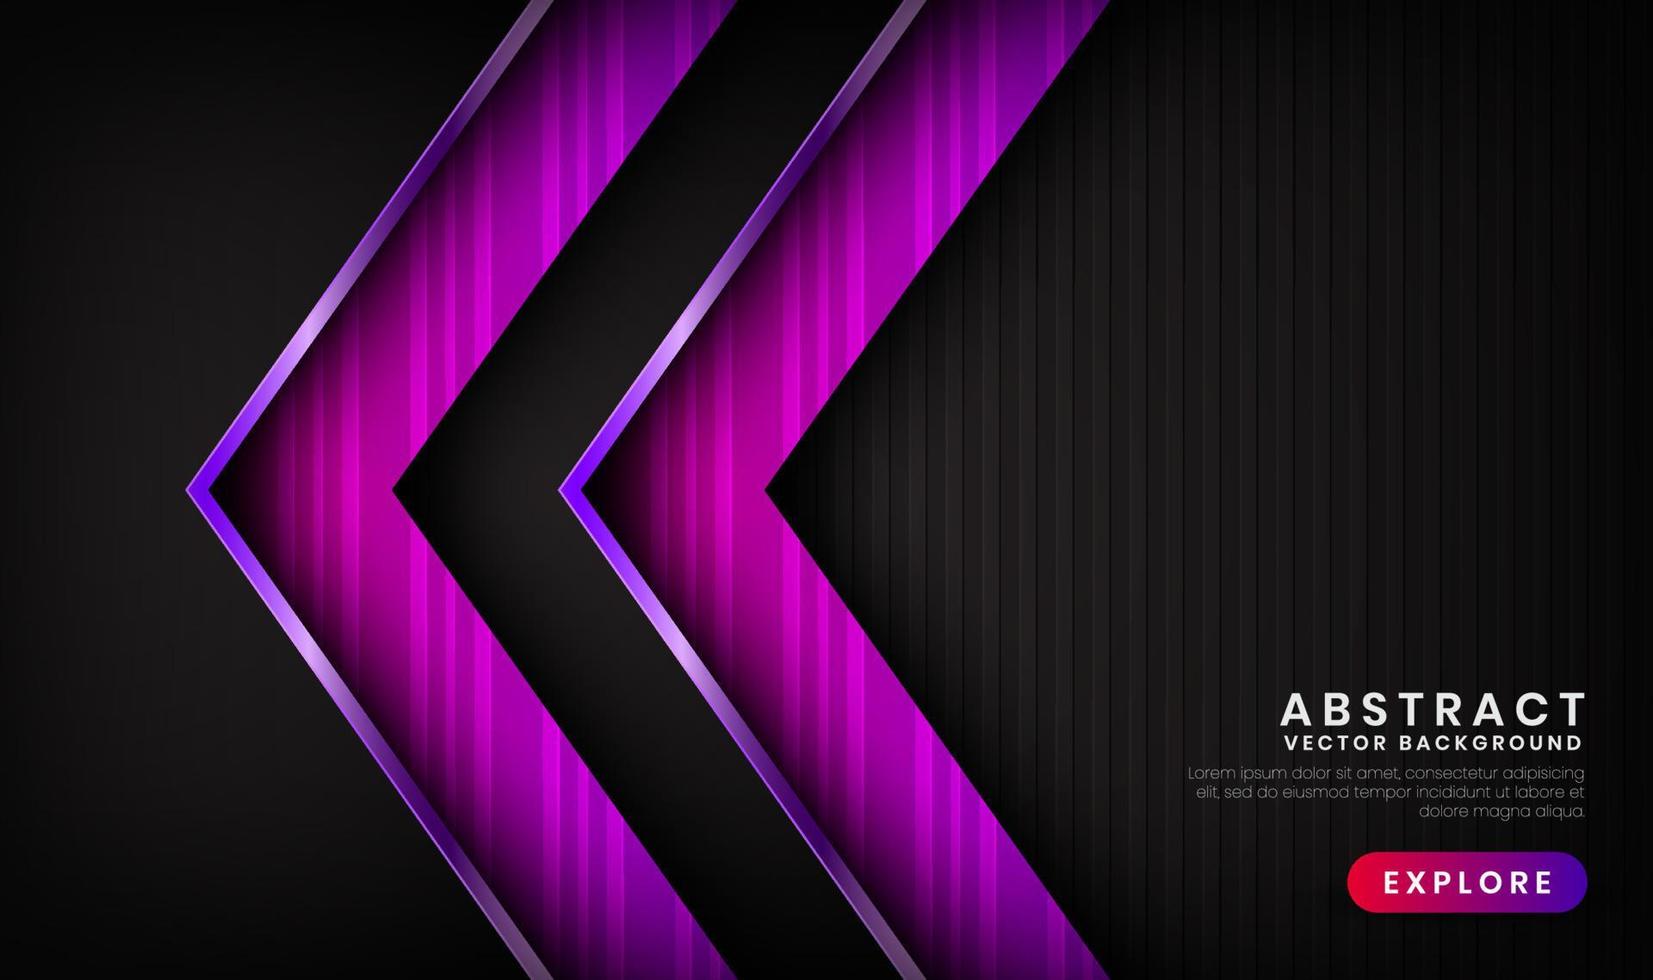 El fondo abstracto de lujo púrpura negro 3d se superpone en capas en el espacio oscuro con decoración de efecto de líneas metálicas. elemento de diseño gráfico concepto de estilo futuro para volante, pancarta, folleto o página de destino vector